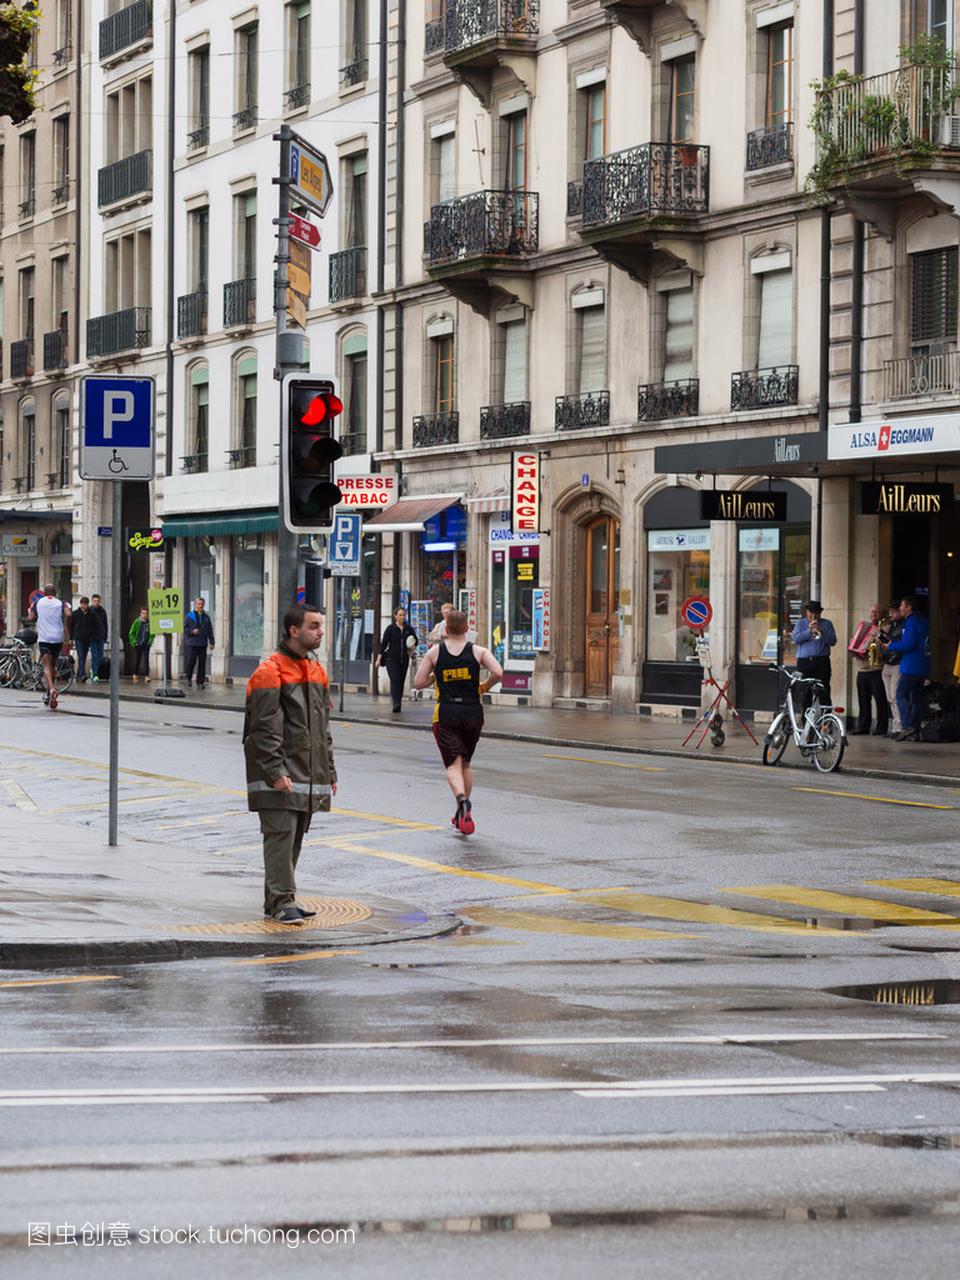 2015 年 3 月 3 日,瑞士日内瓦。马拉松和睦。